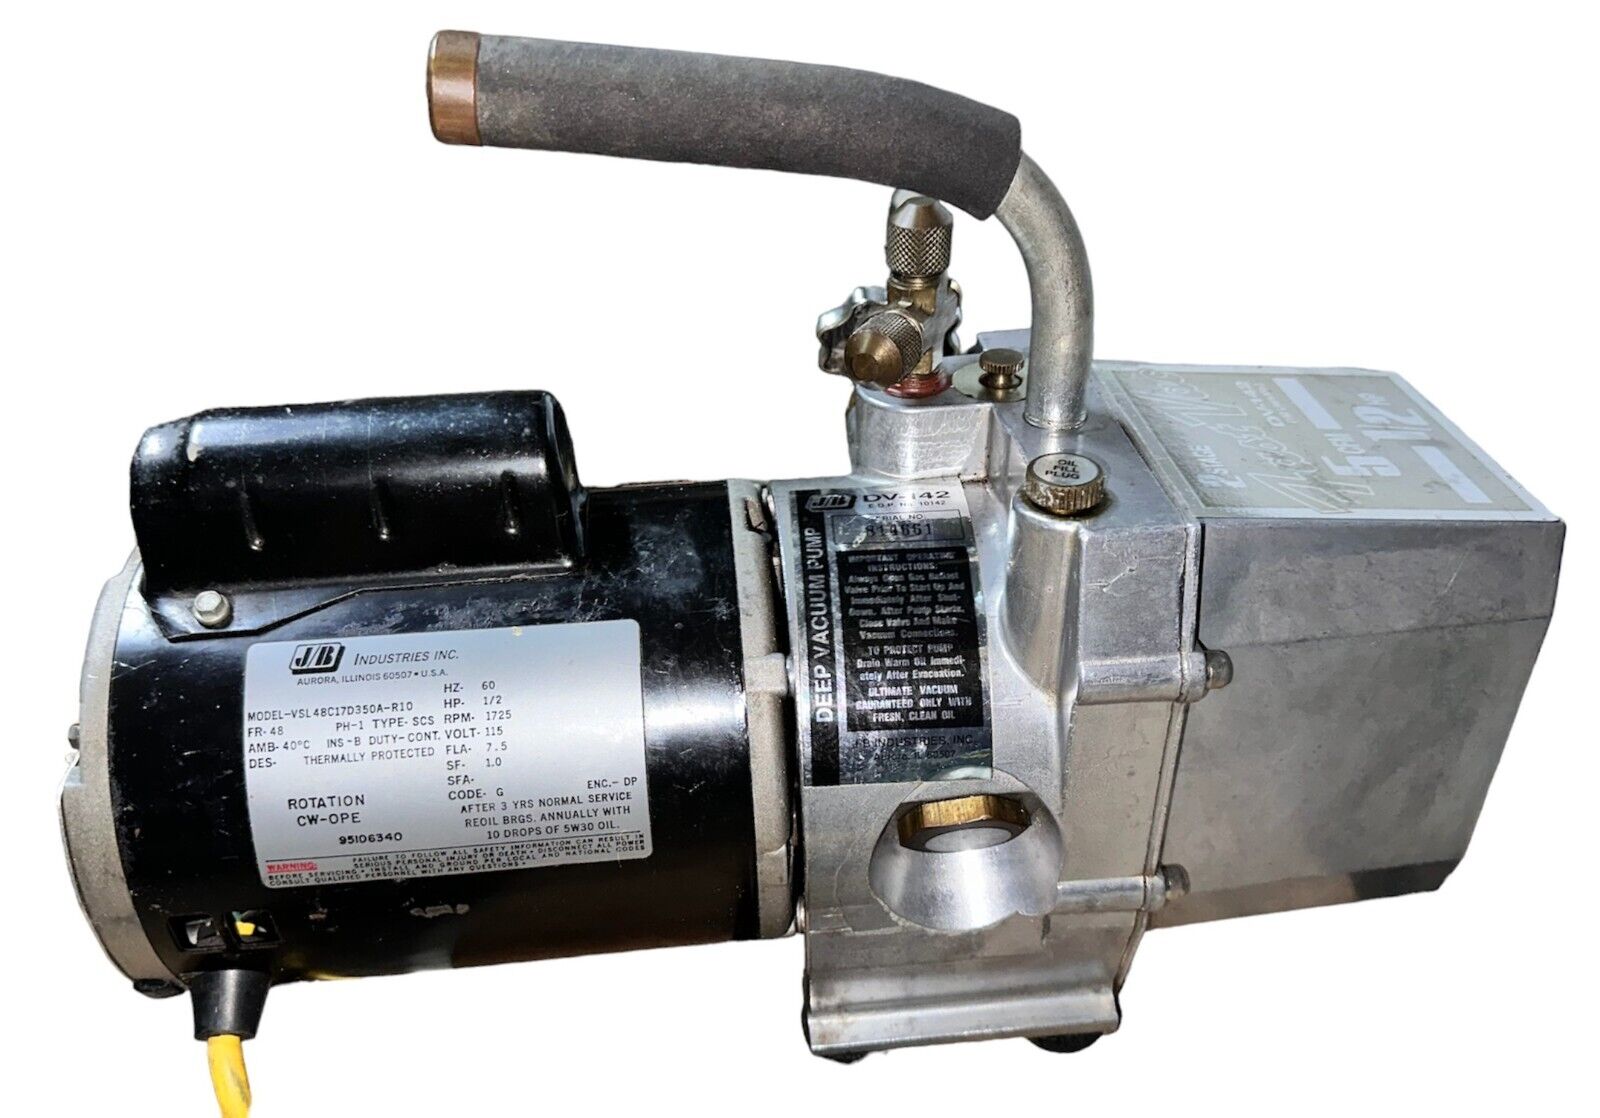 JB Industries DV-142N Vacuum Pump 5 CFM 1/2 Horse Power Motor Fast Vac